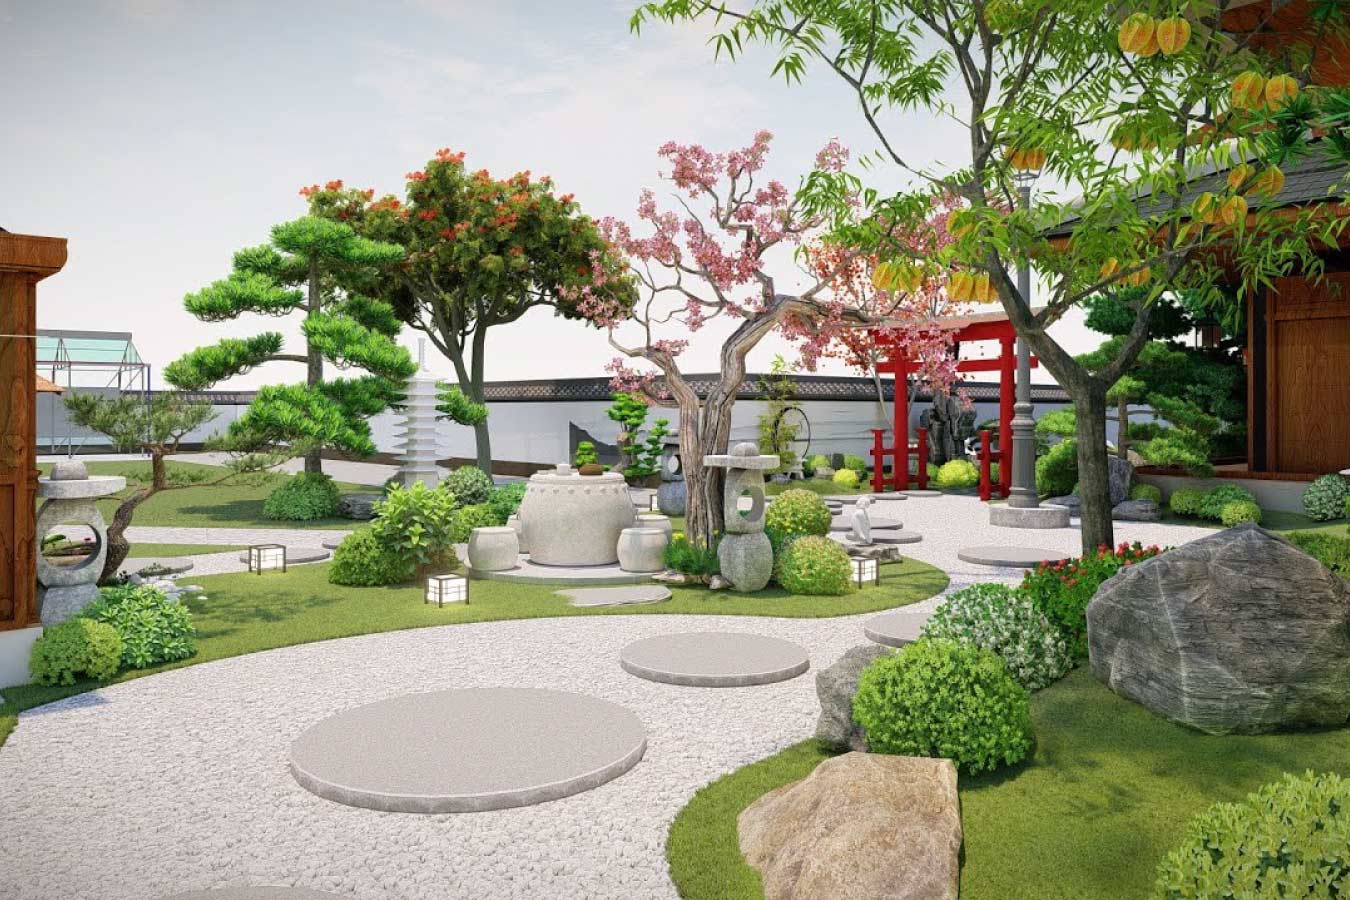 Vườn kiểu Nhật tạo cảm giác rất thư giãn